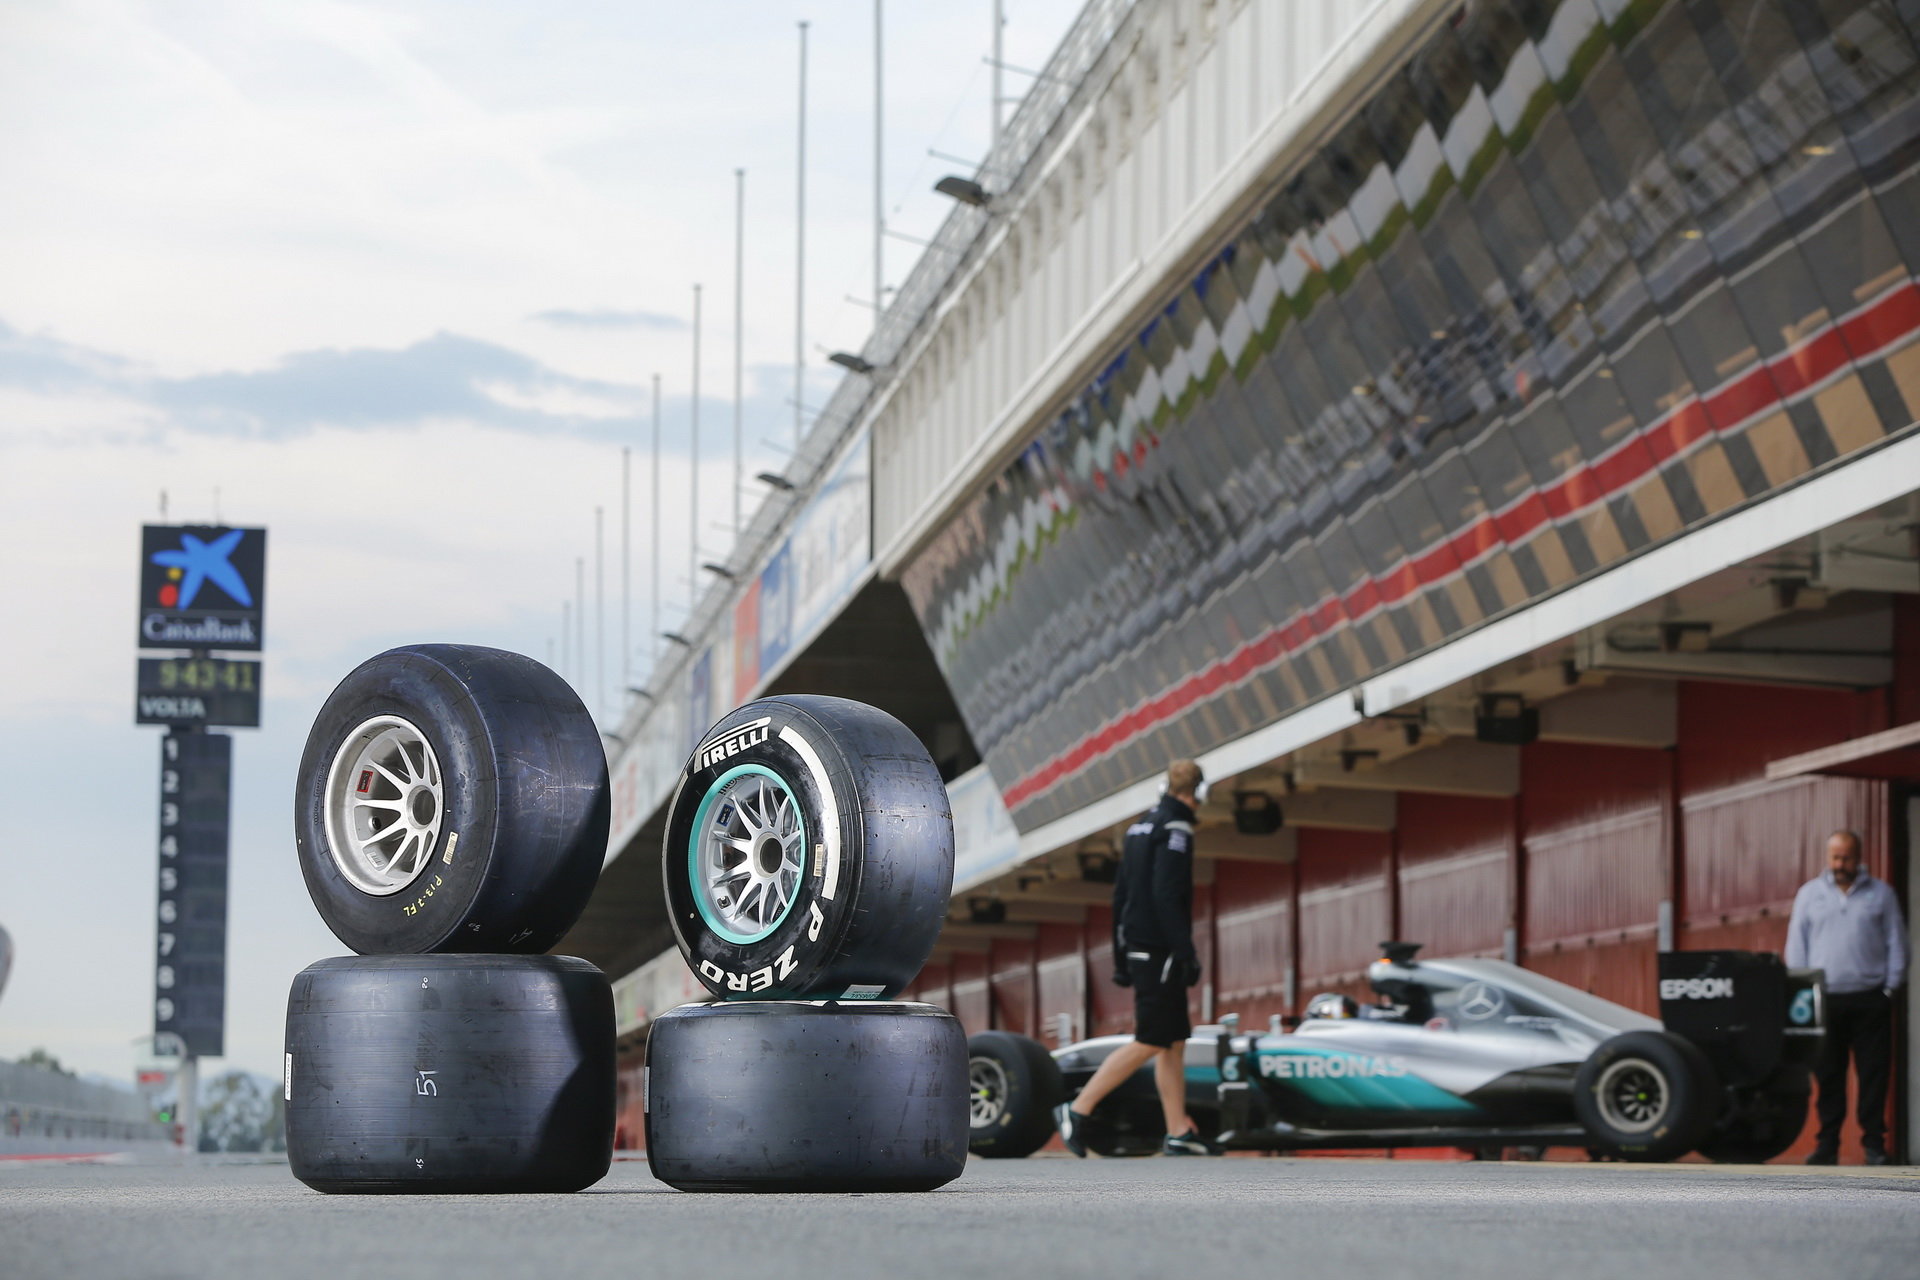 Širší pneumatiky Pirelli při testu s Mercedesem v Barceloně